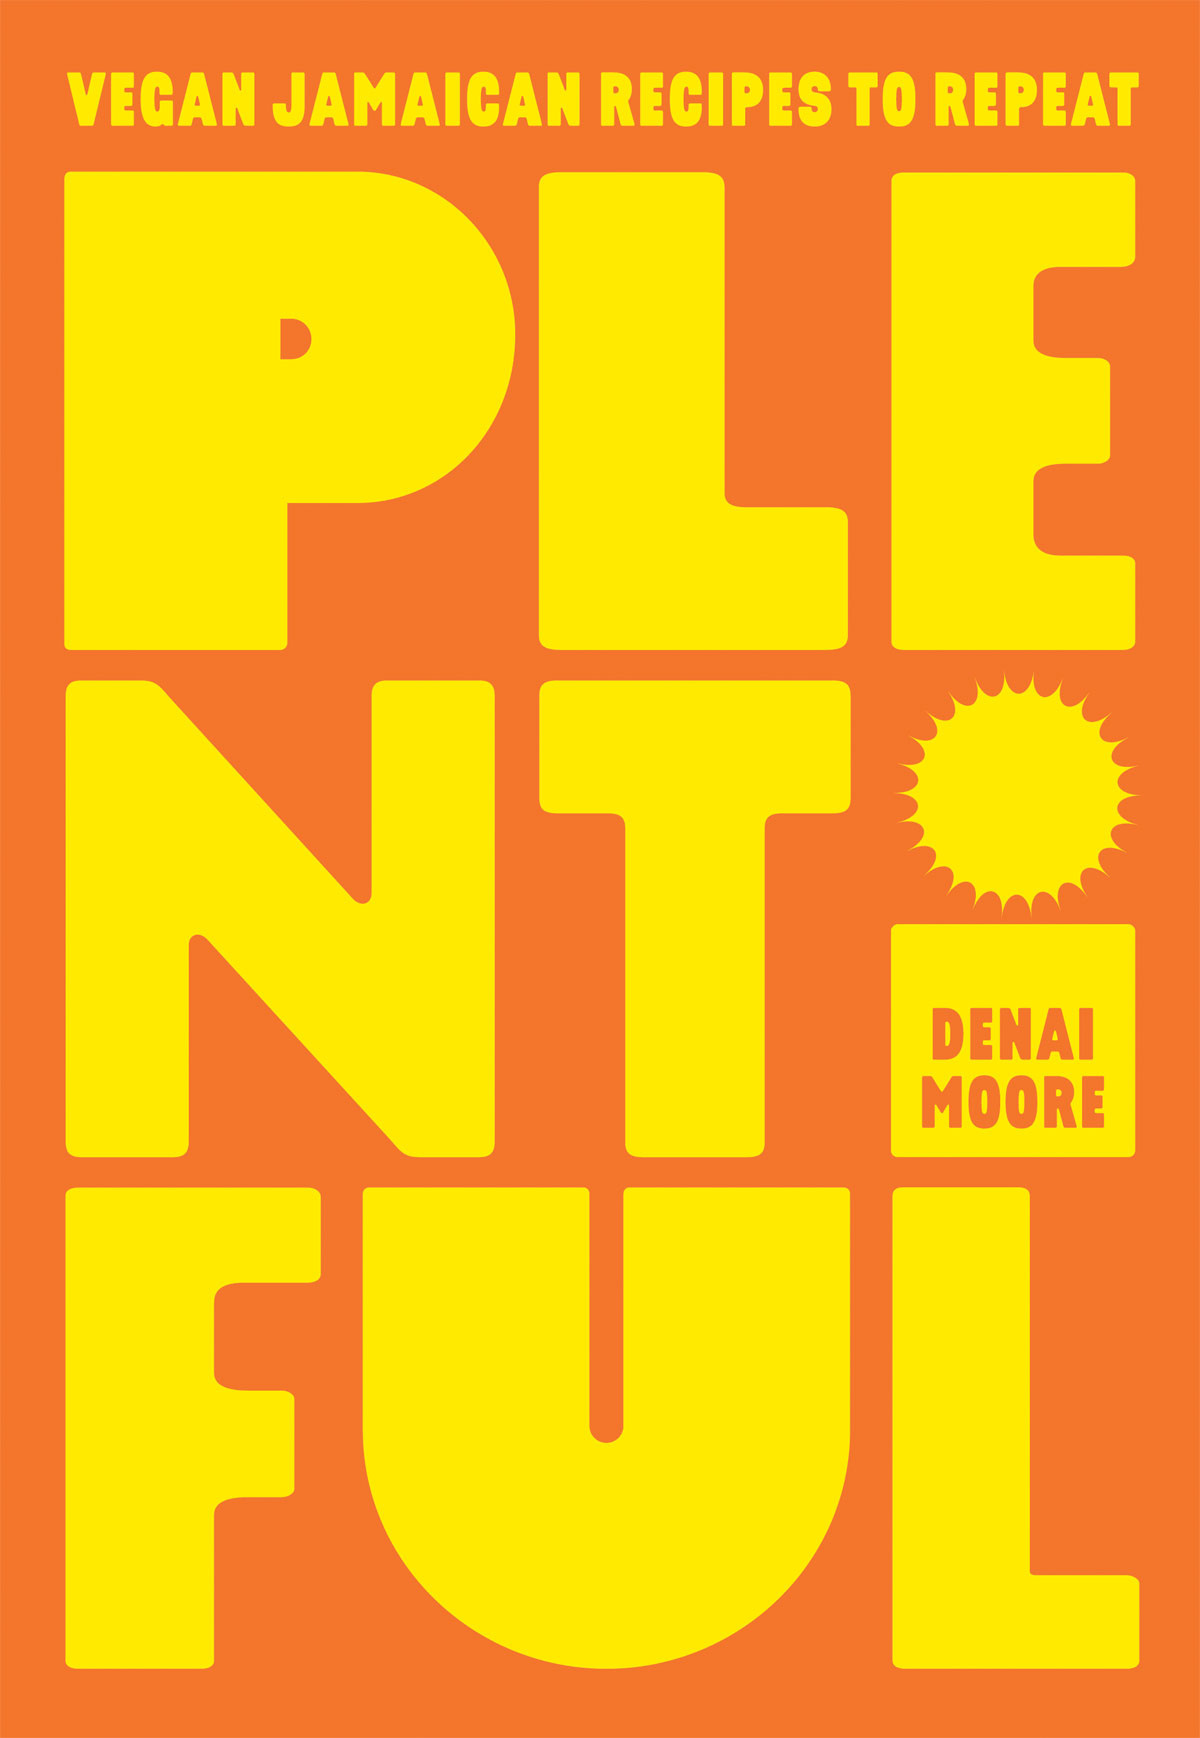 Book cover of Plentiful by Denai Moore